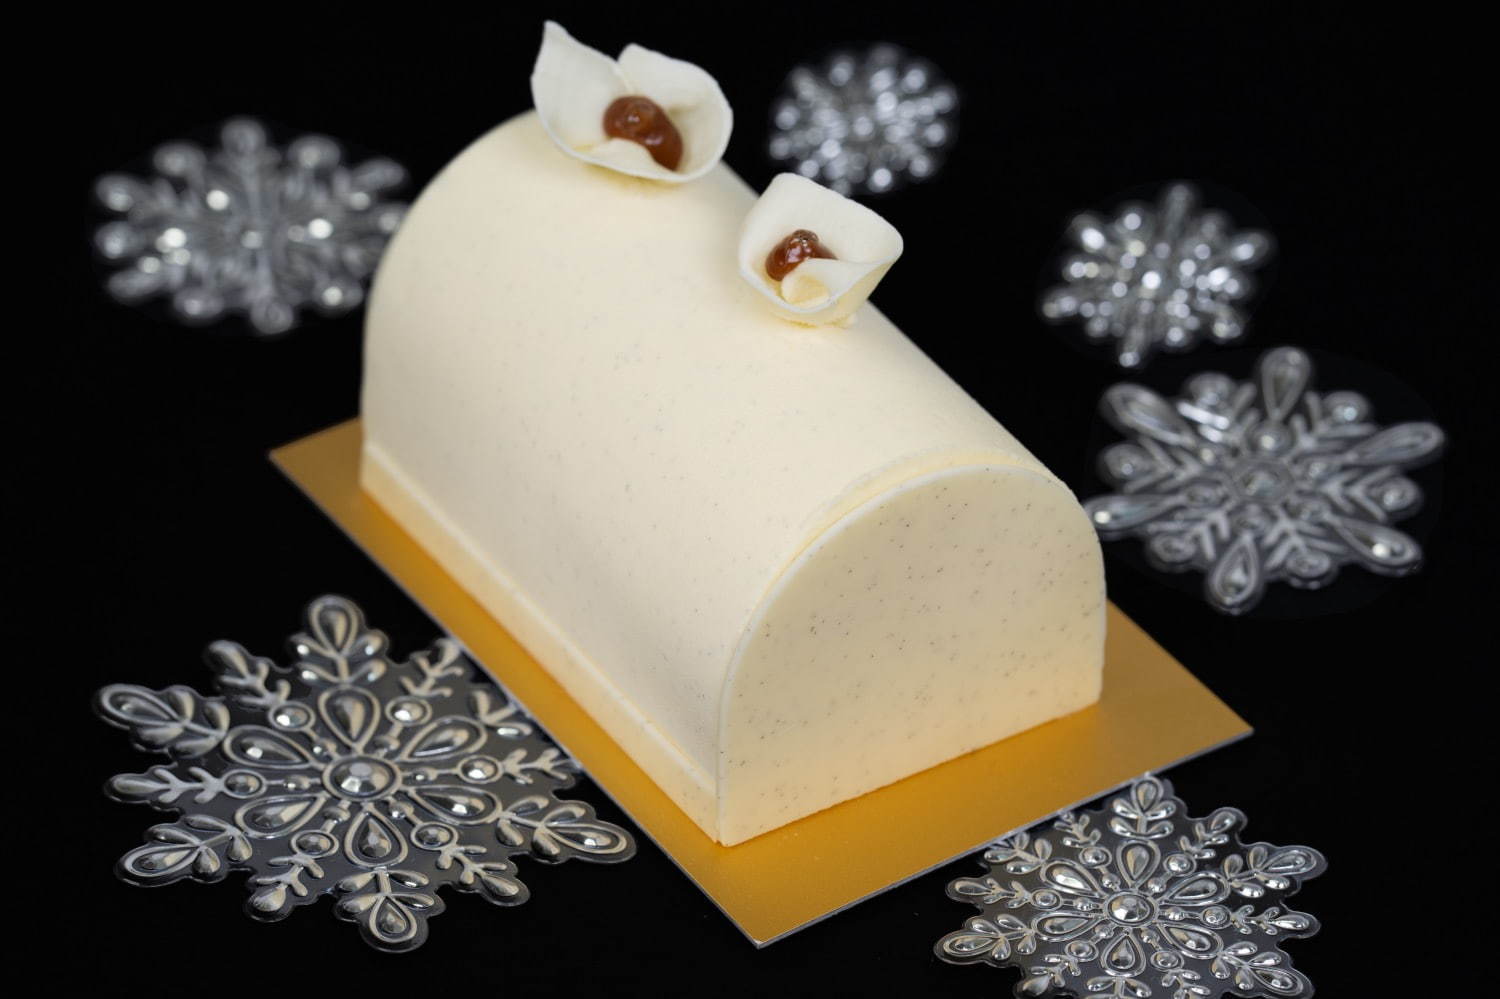 ラデュレのクリスマスケーキ ブラン マンジェ をイメージしたビュッシュ ド ノエルなど ファッションプレス